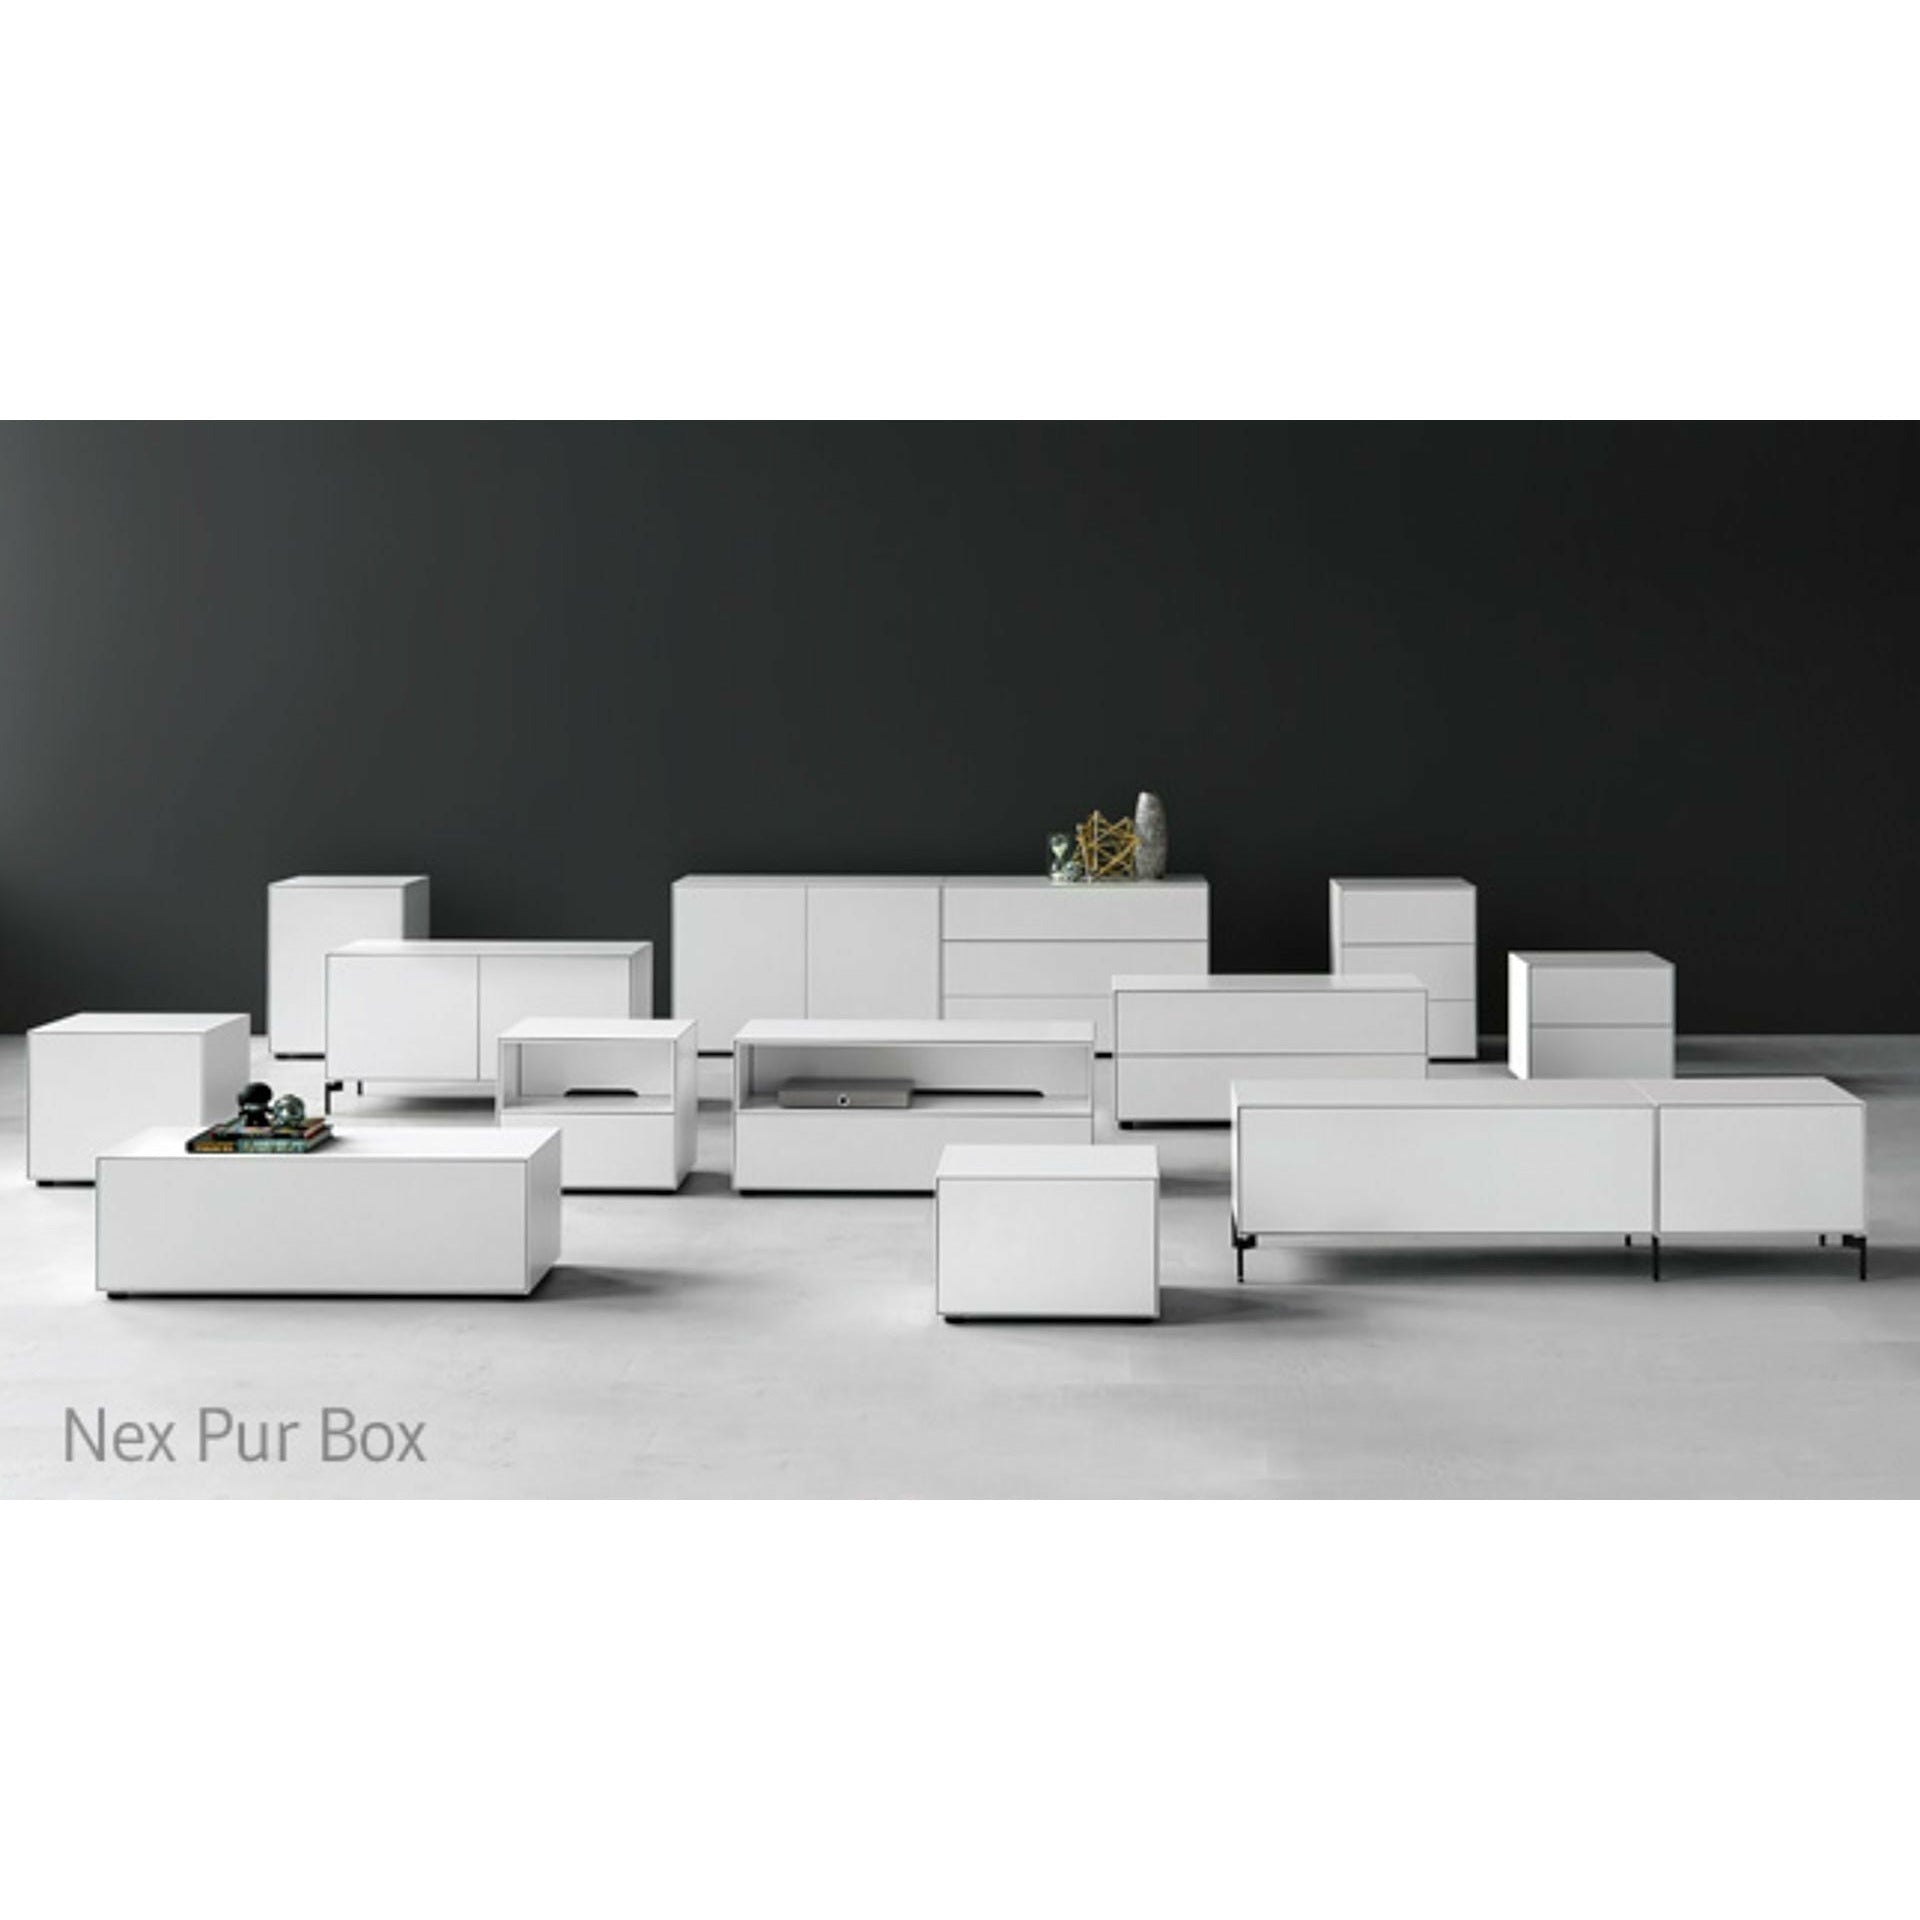 Piure Nex Pur Box Schublade/Tür Hx B 50x180 Cm, 2 Fachböden/1 Fachboden